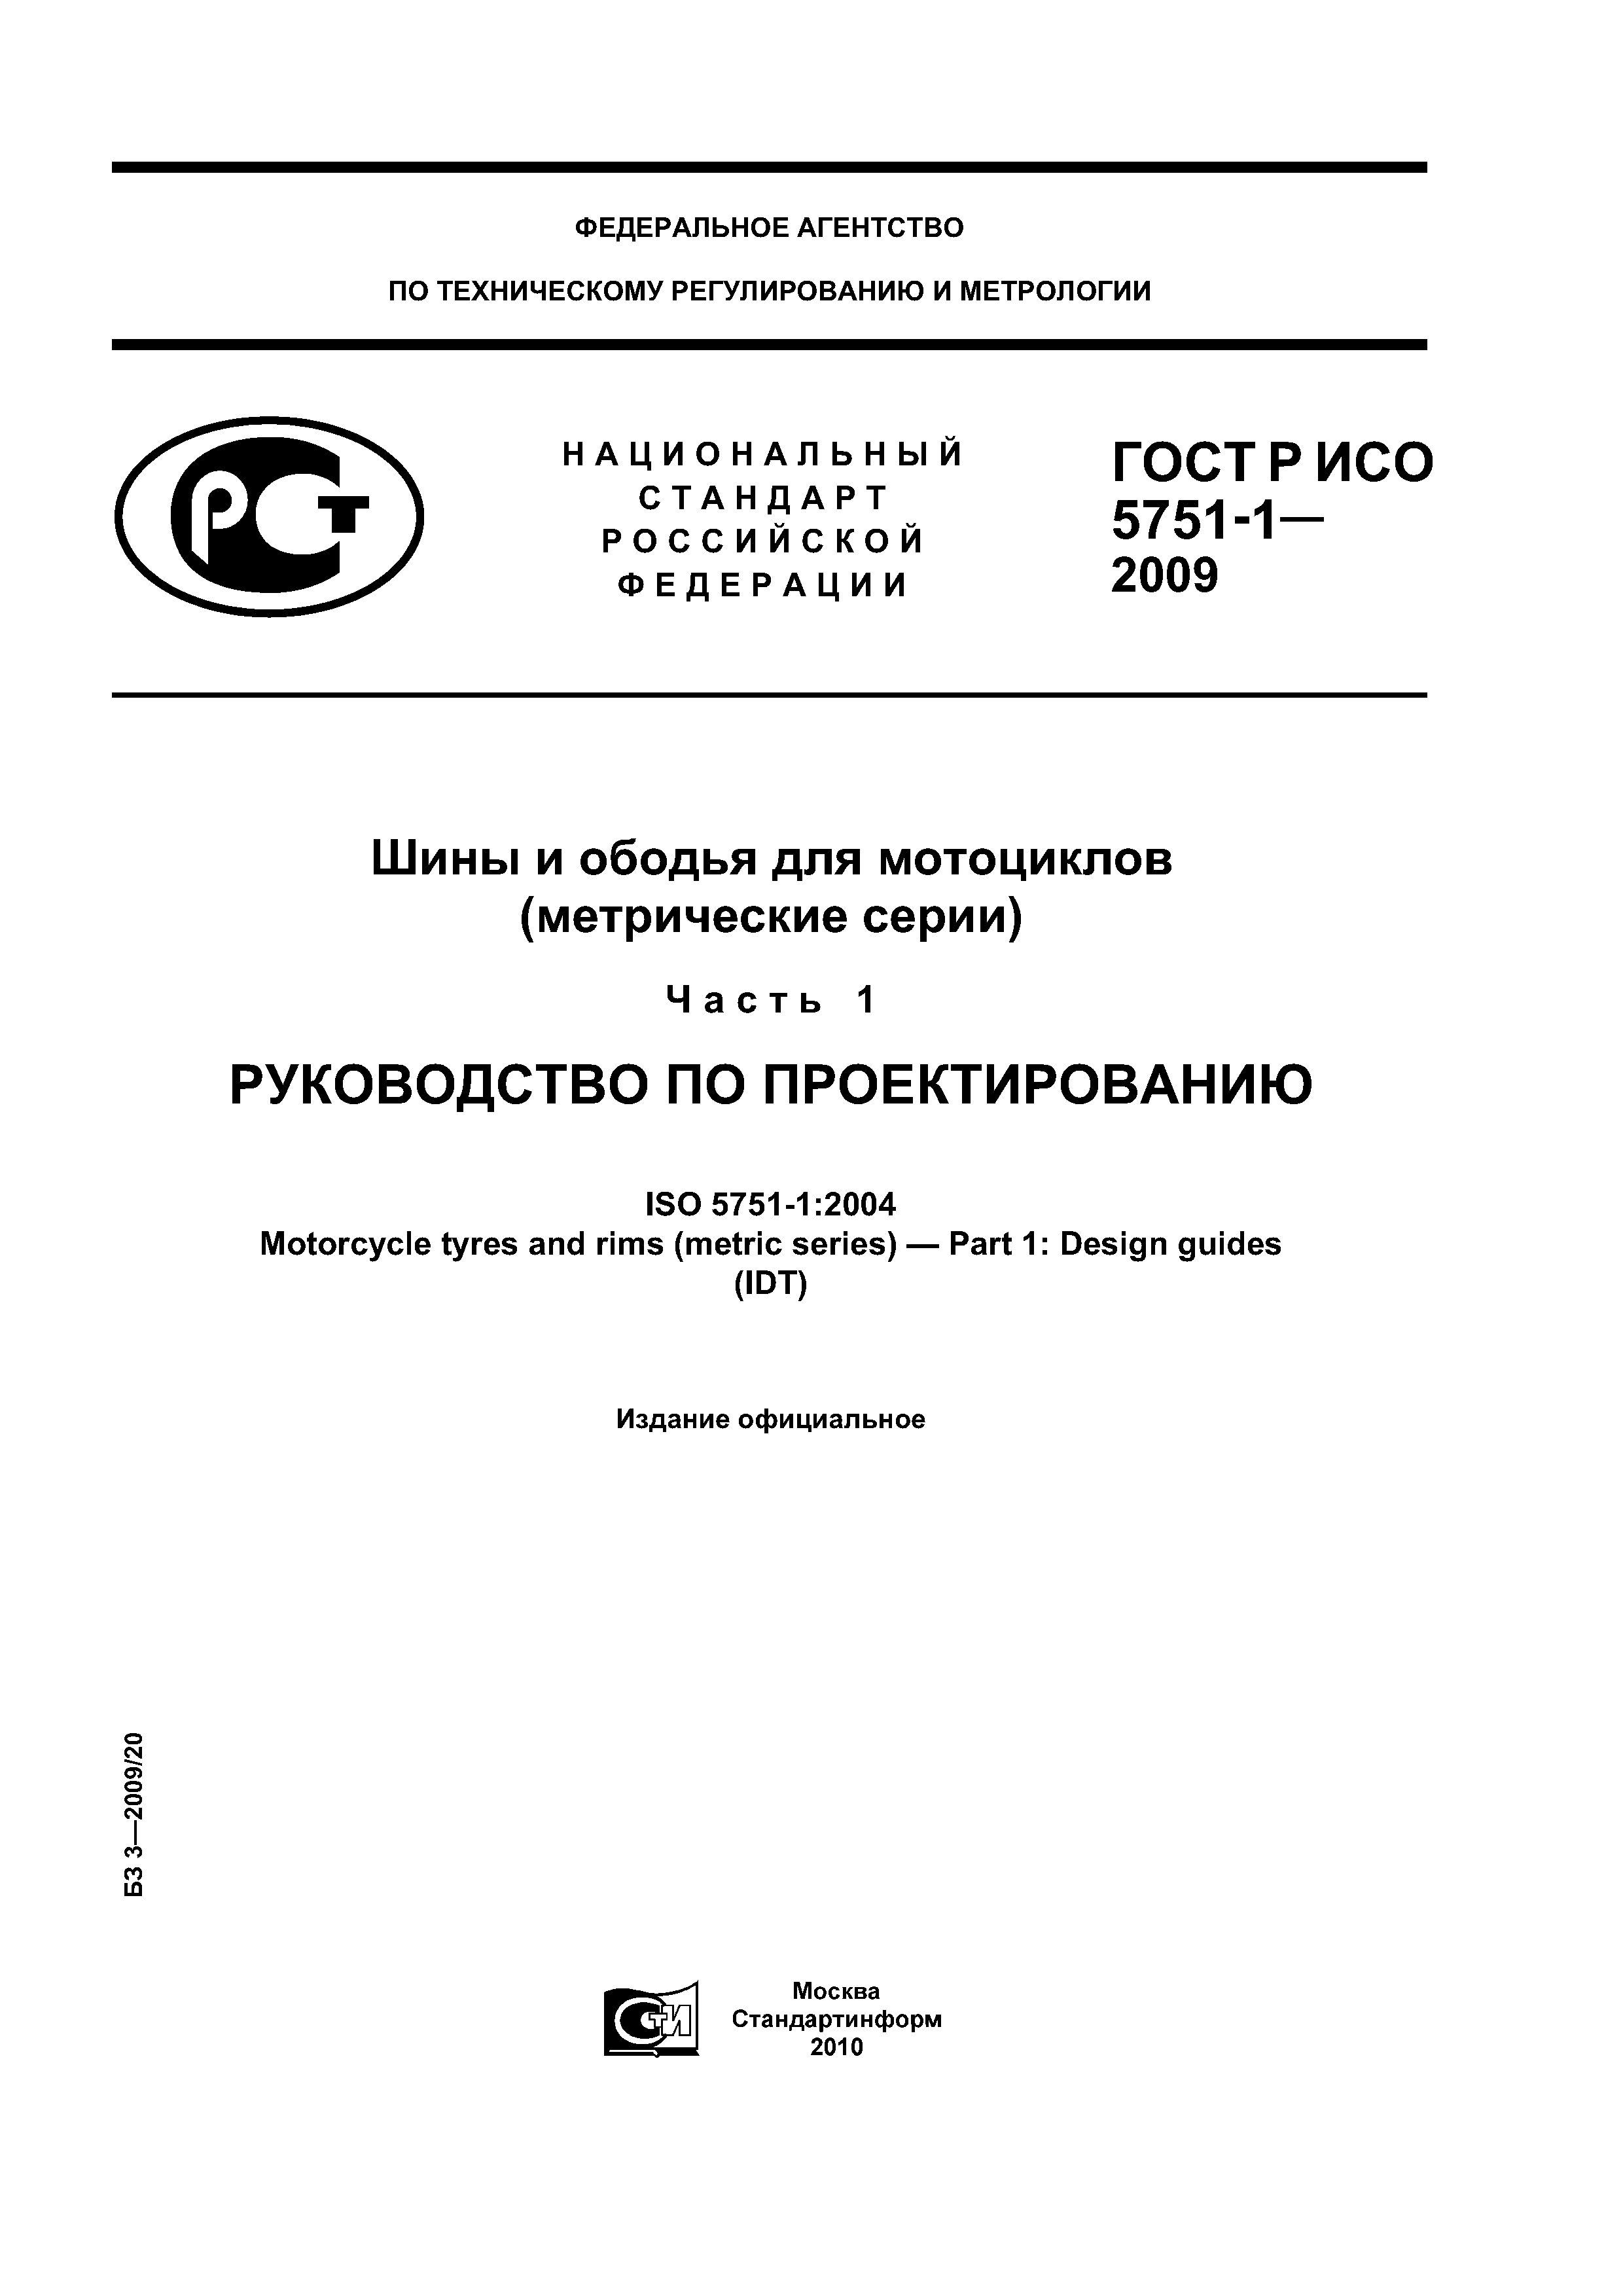 ГОСТ Р ИСО 5751-1-2009